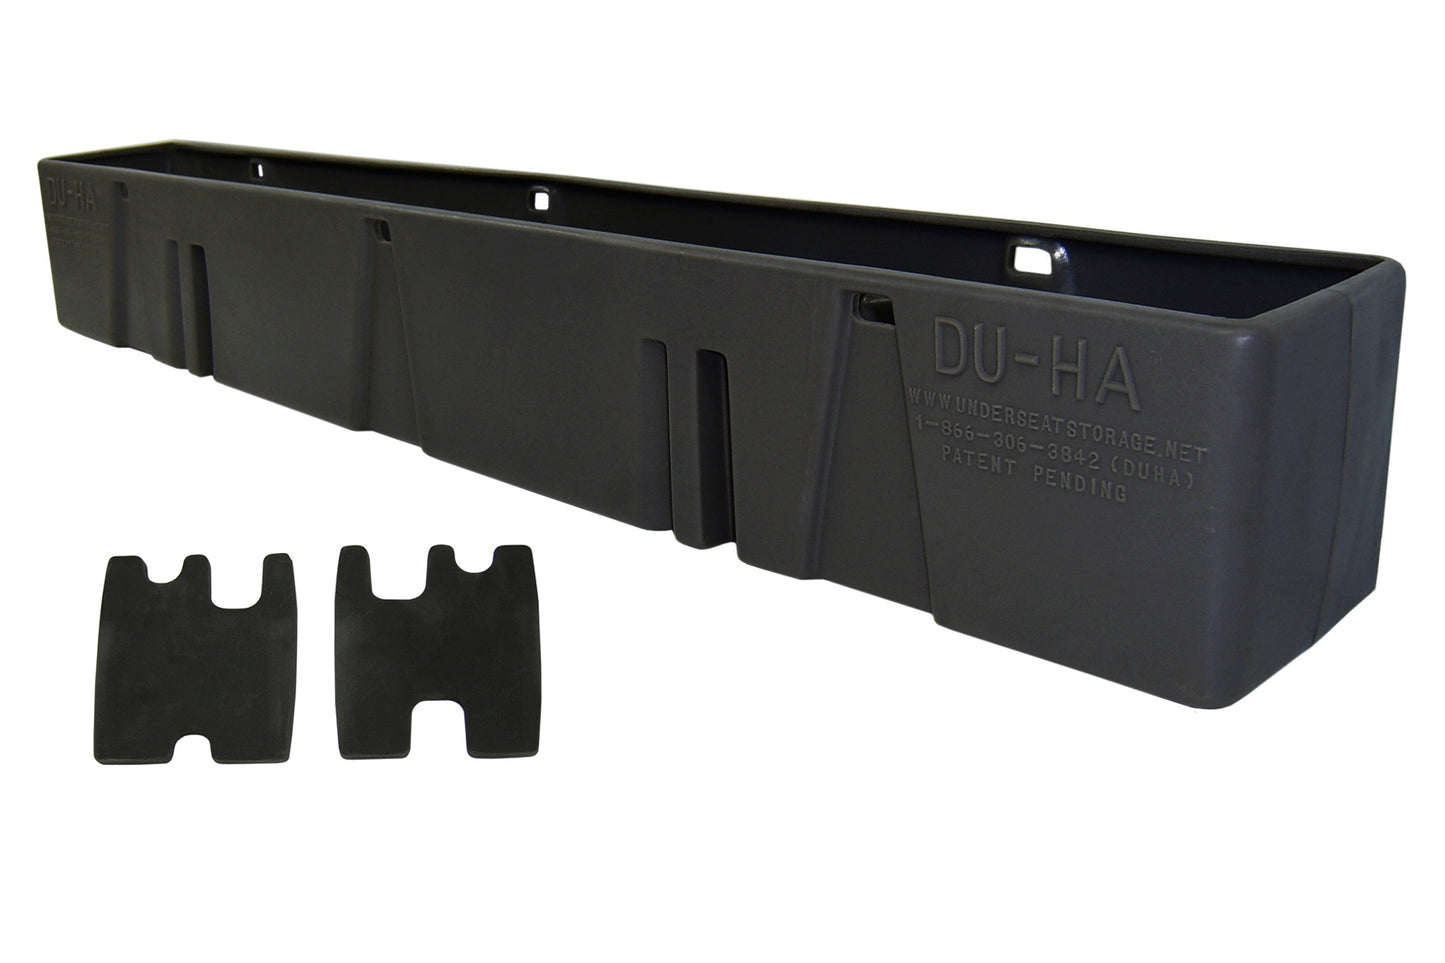 DU-HA 10058 Chevrolet/GMC Behind-the-Seat Storage Console Organizer And Gun Case - Black